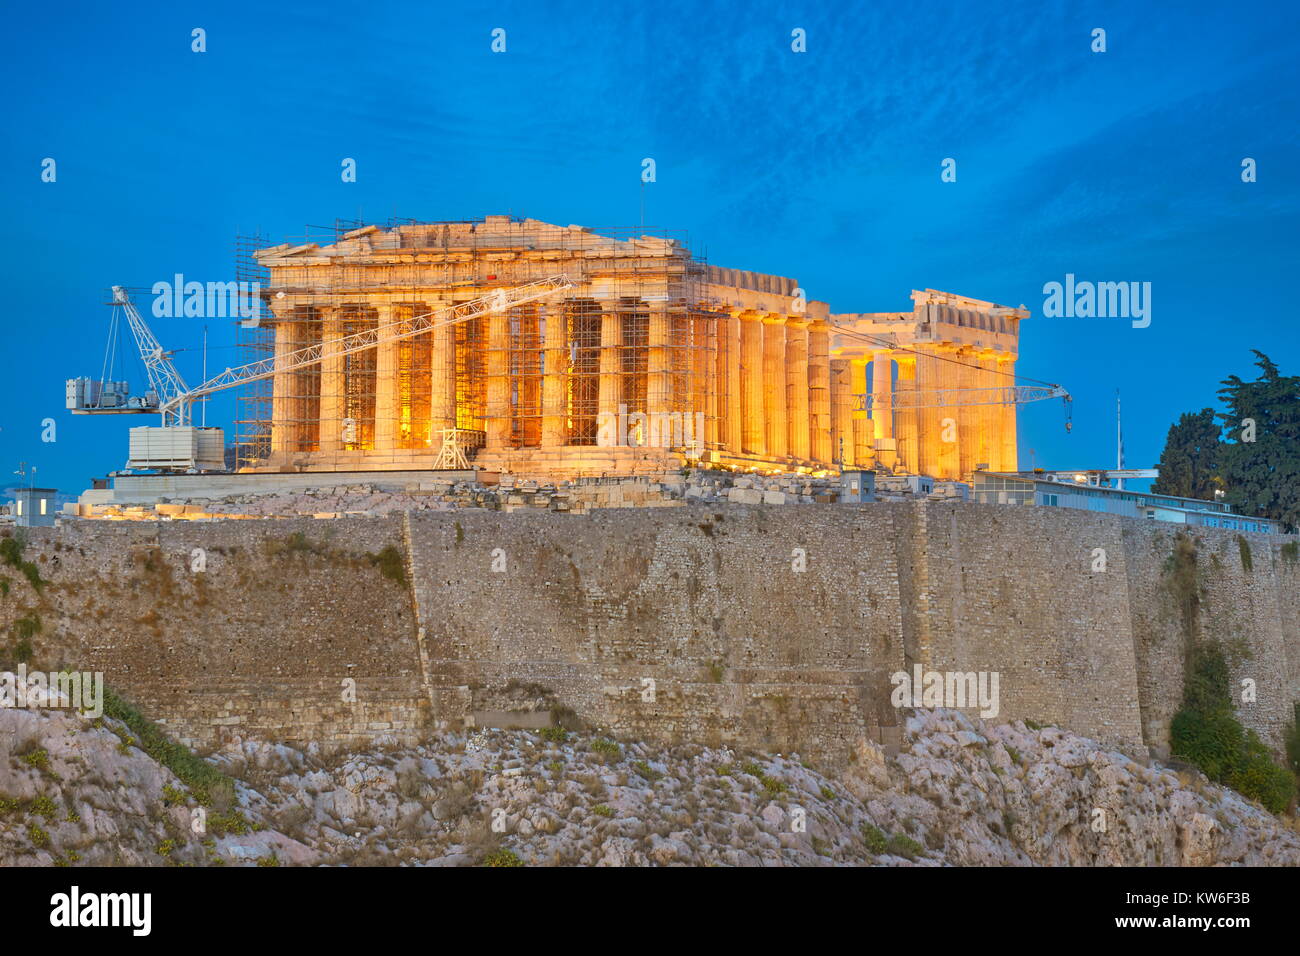 Evening view at Parthenon, Acropolis, Athens, Greece Stock Photo